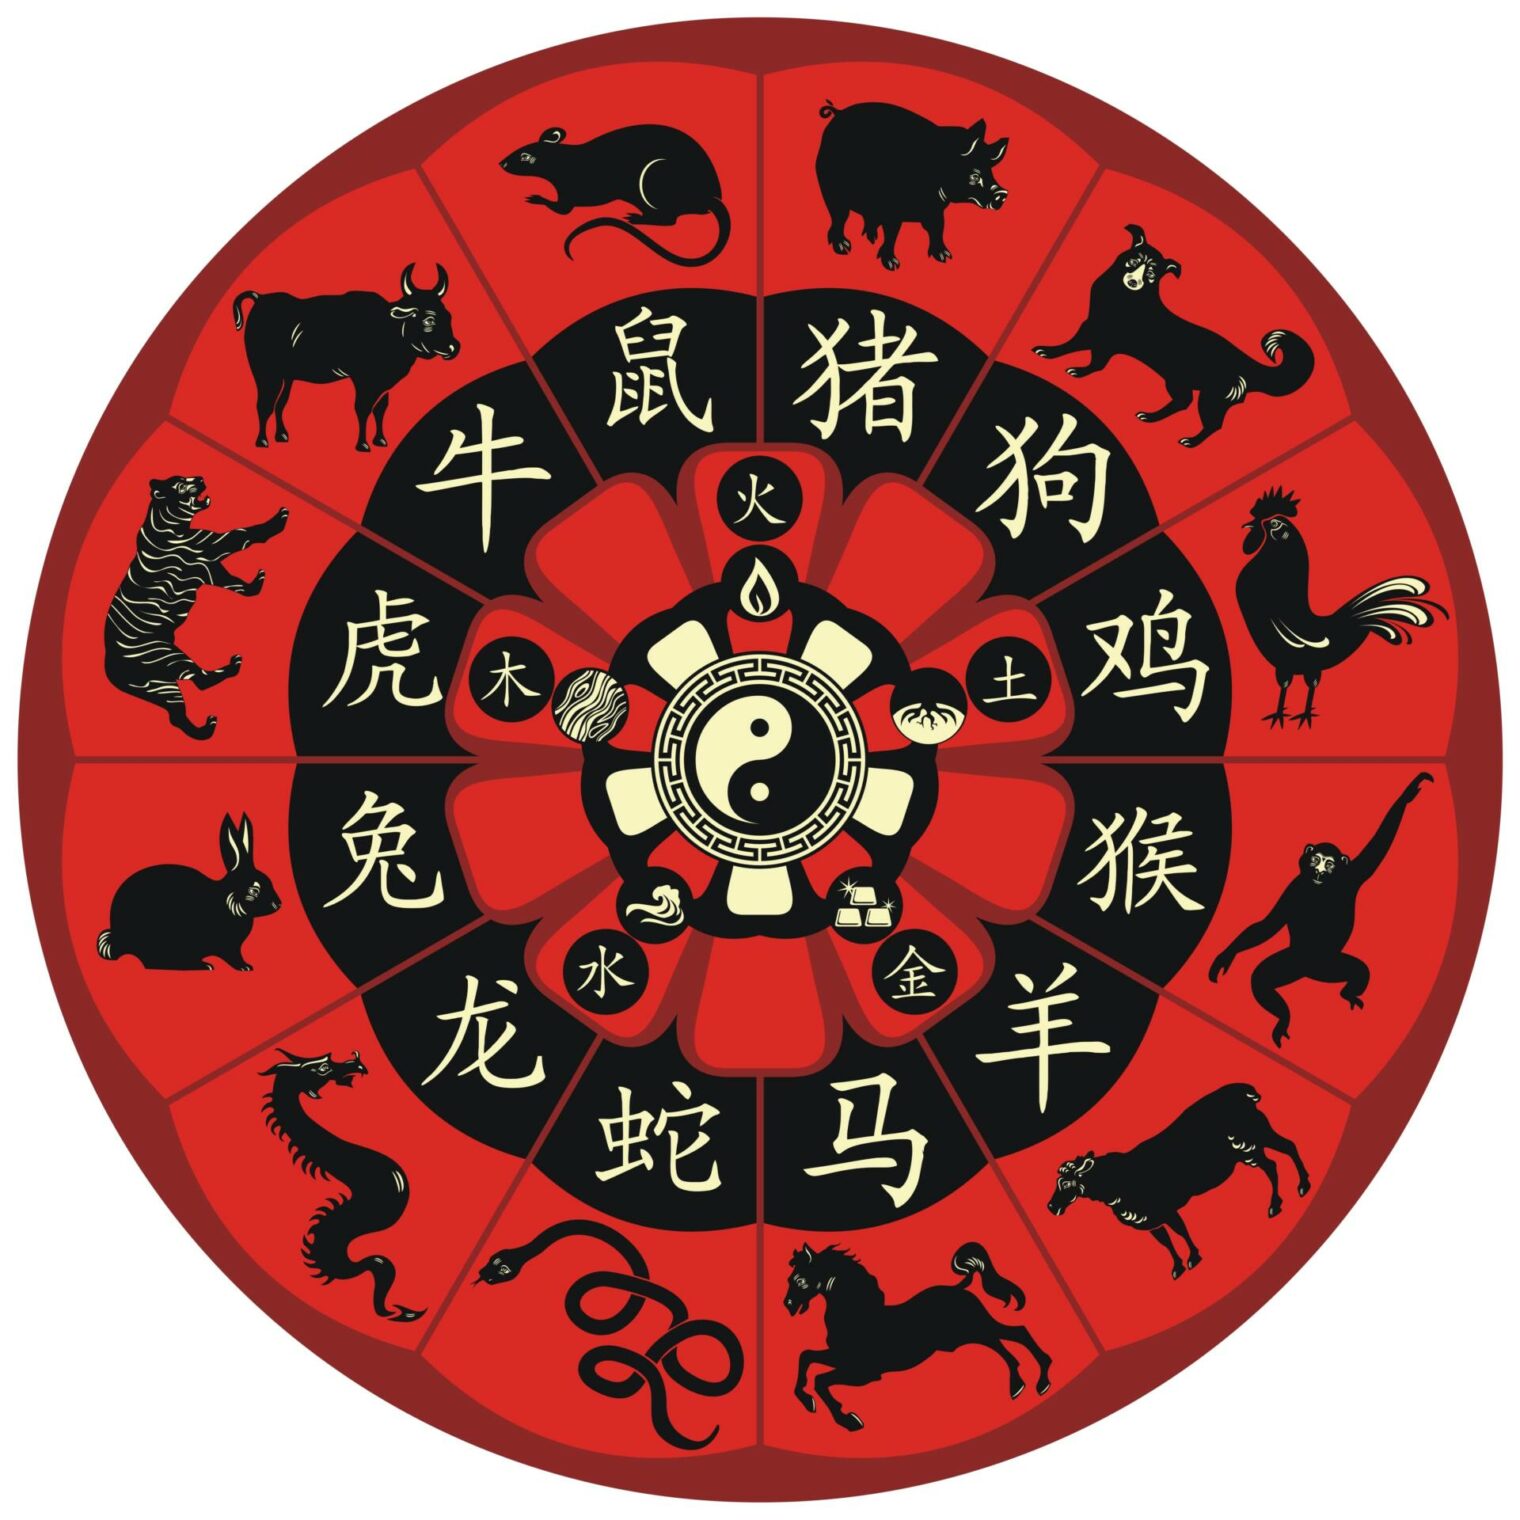 Descubra os 5 signos do zodíaco chinês mais sortudos no amor